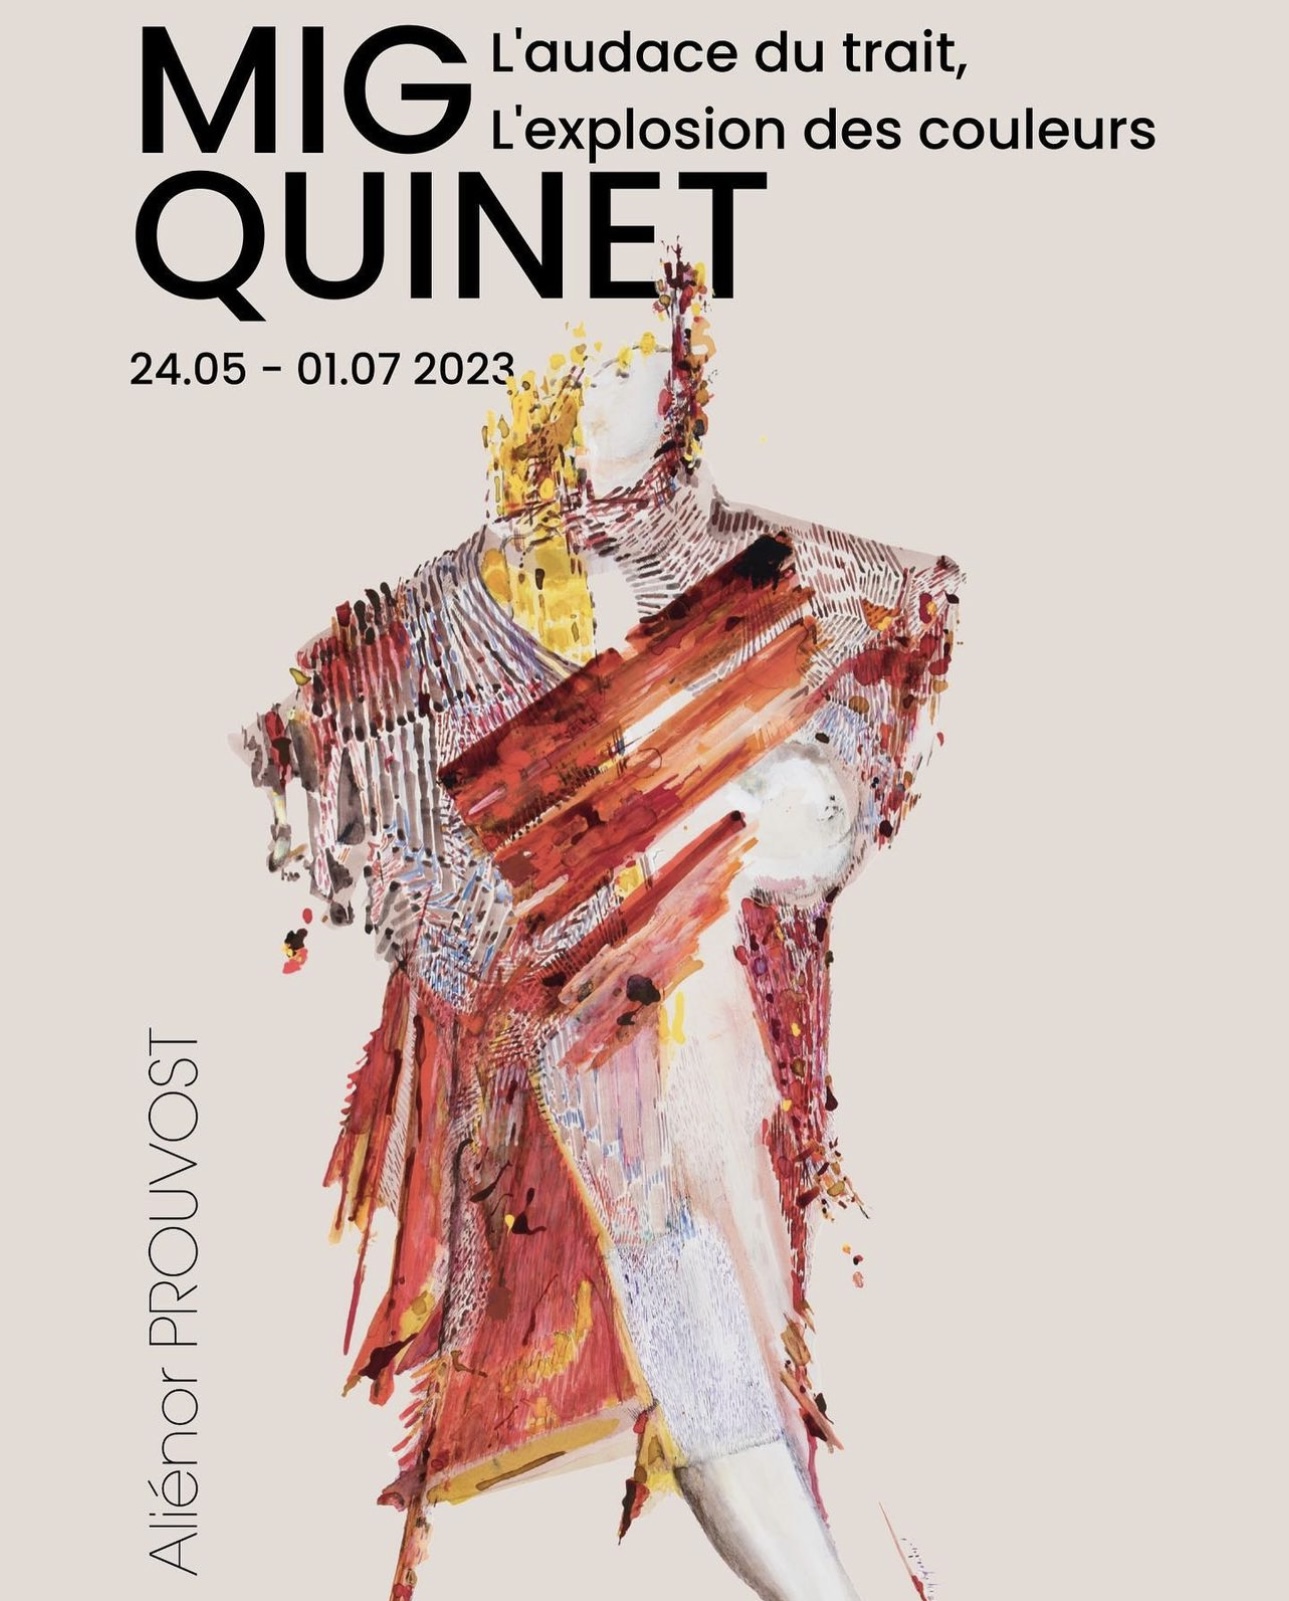 Mig Quinet : L’audace du trait, l’explosion des couleurs, exposition 2023 galerie Aliénor Prouvost